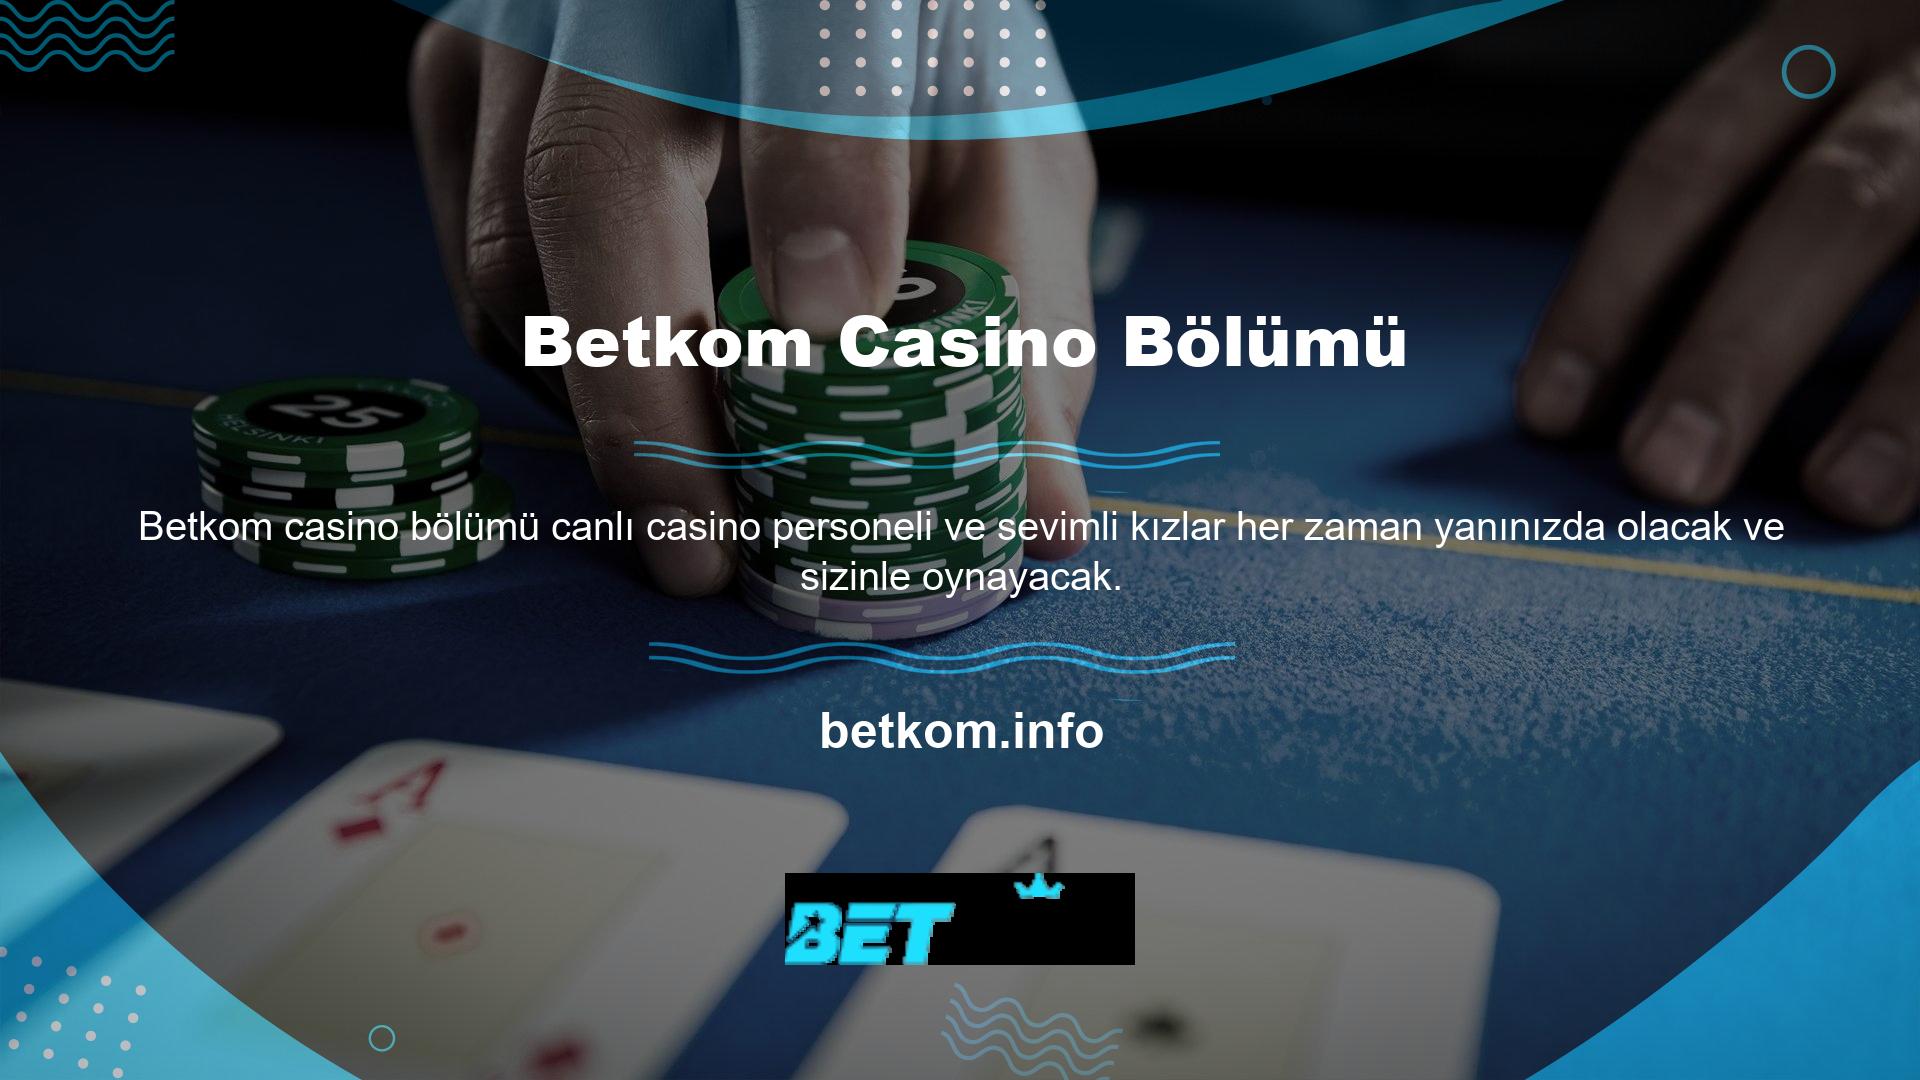 Oyunu oynarken herhangi bir sorunla karşılaşırsanız hemen Betkom destek hattını arayabilir veya e-posta ile site ile iletişime geçebilirsiniz